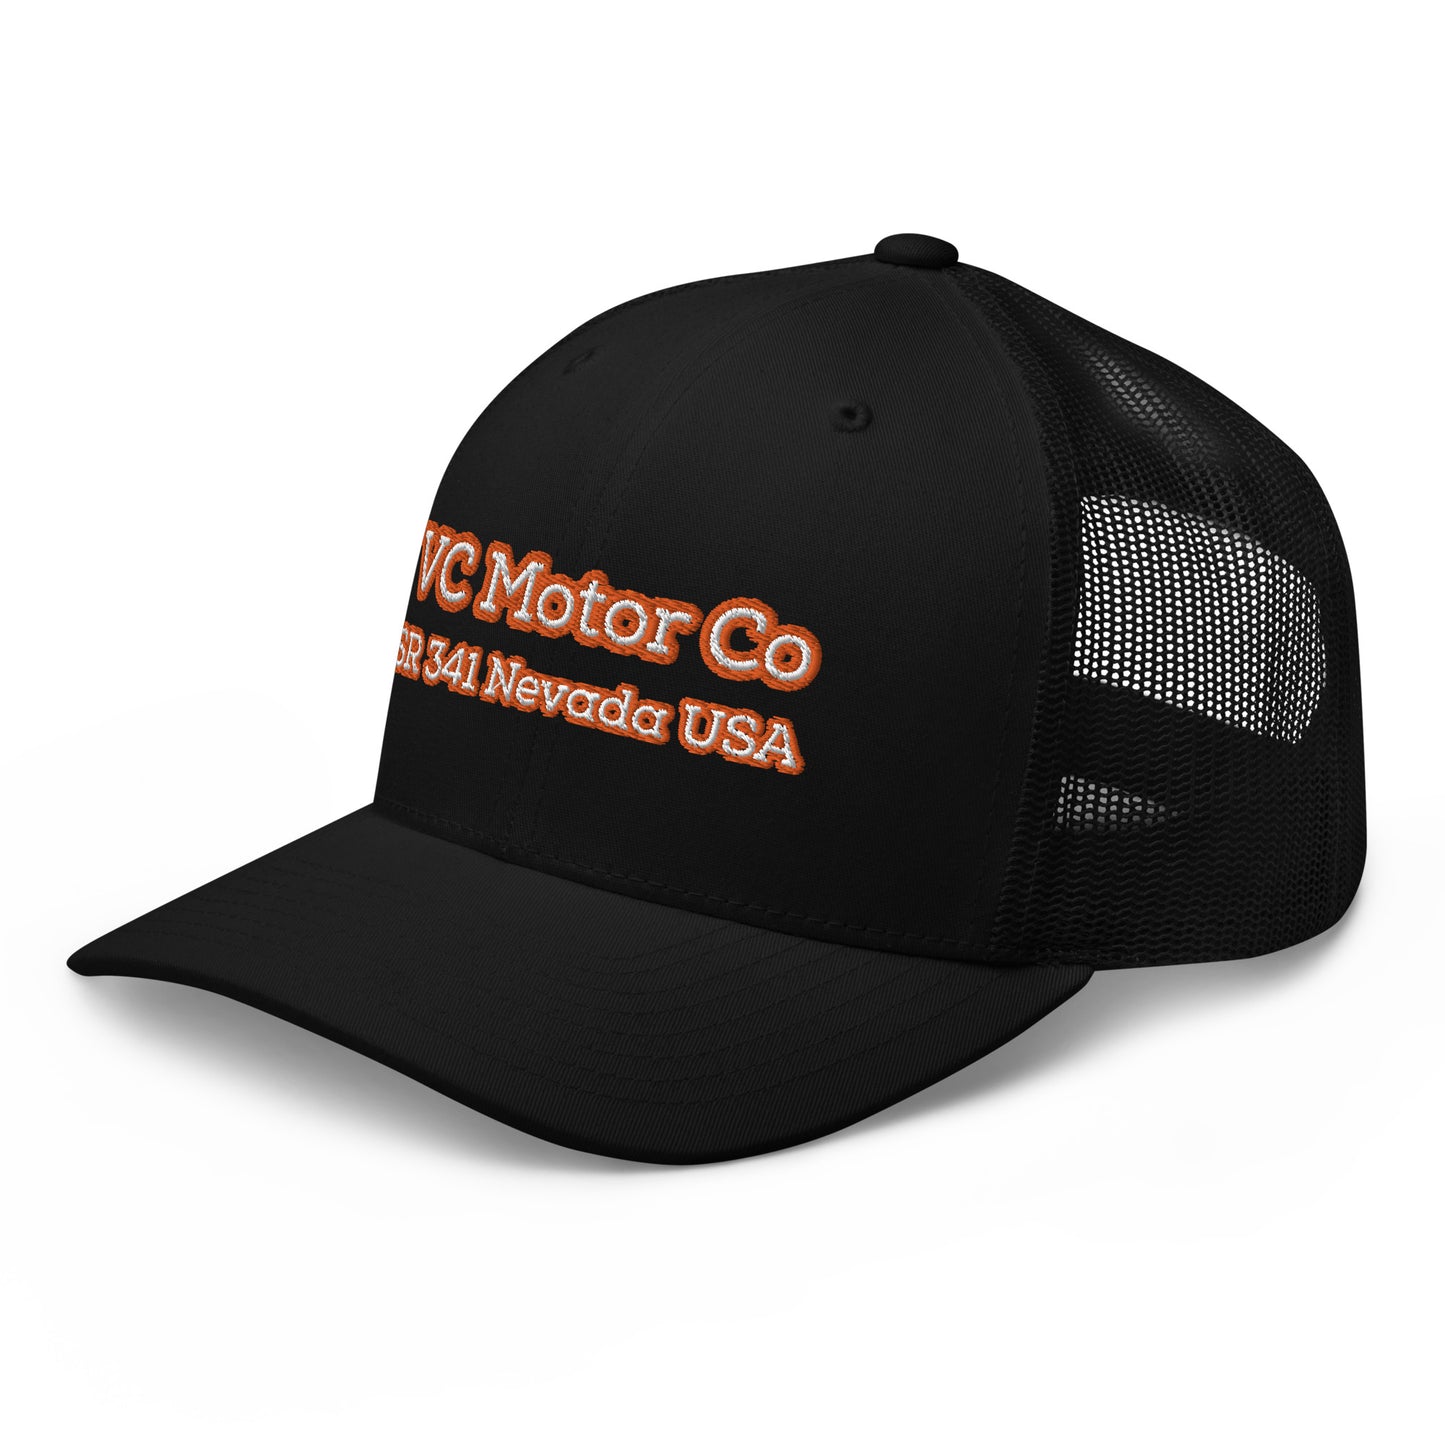 VC Motor Company Trucker Cap Hats Virginia City Motorcycle Company Apparel 